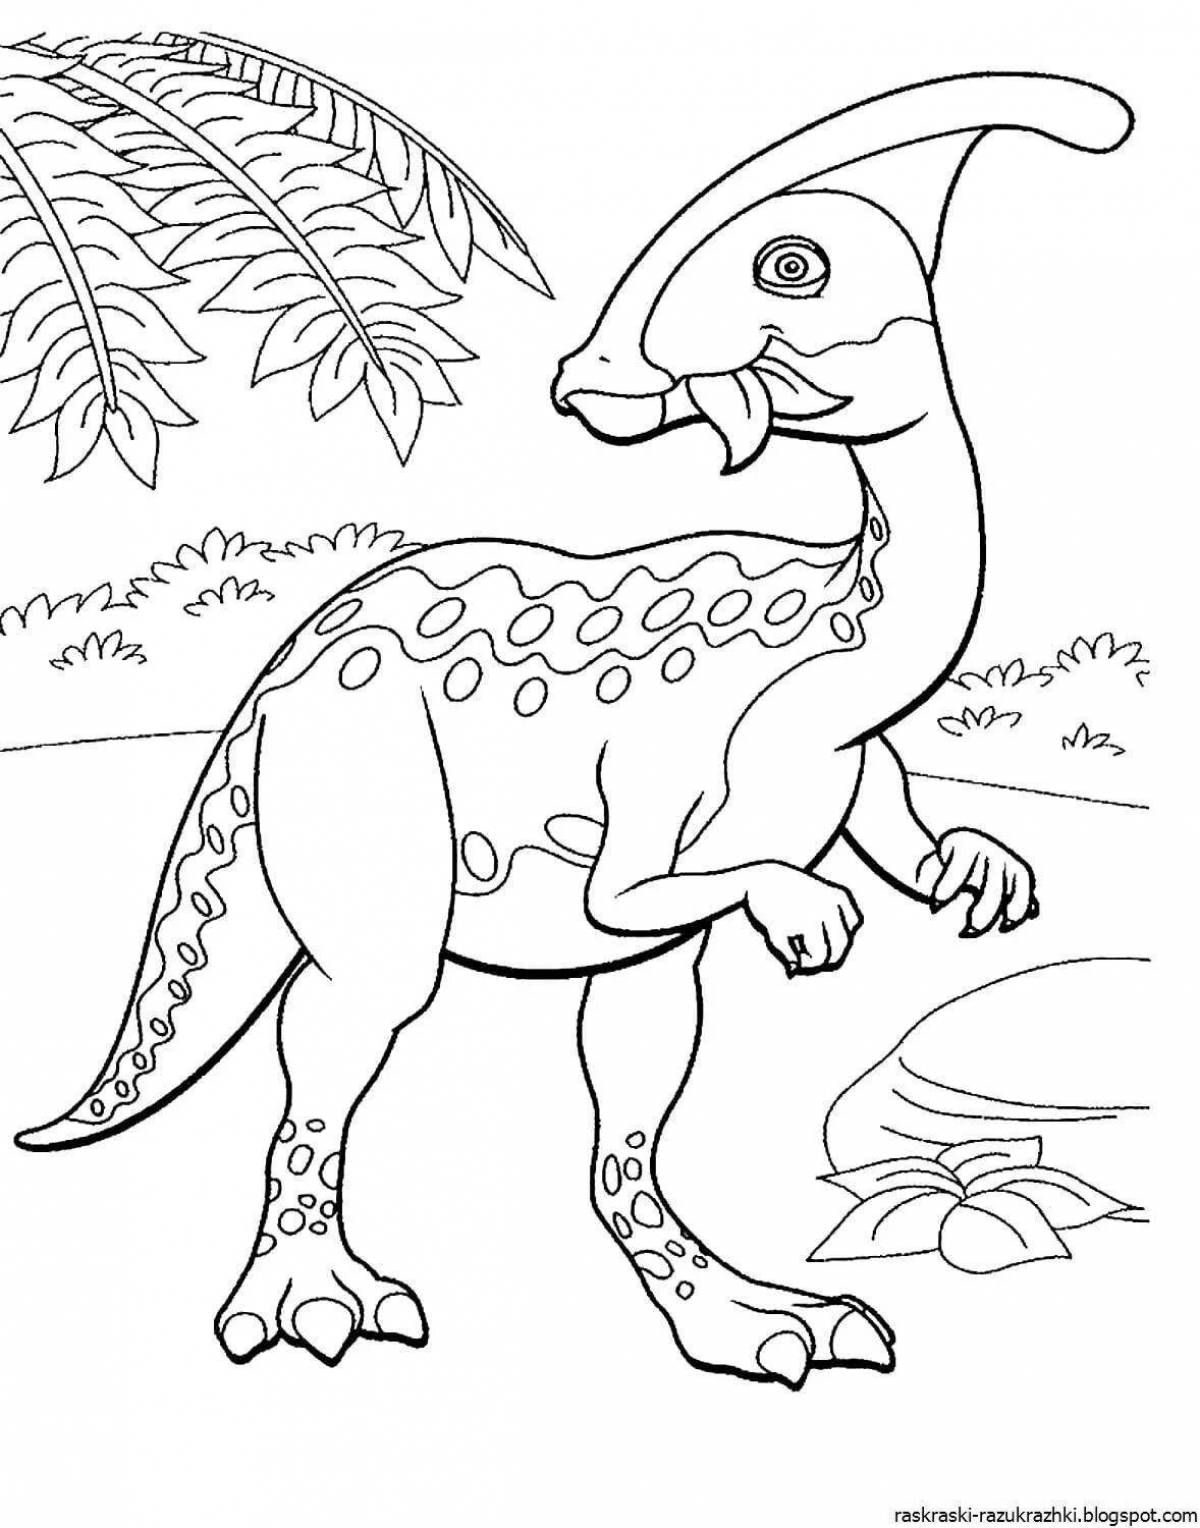 Веселая раскраска динозавров pdf